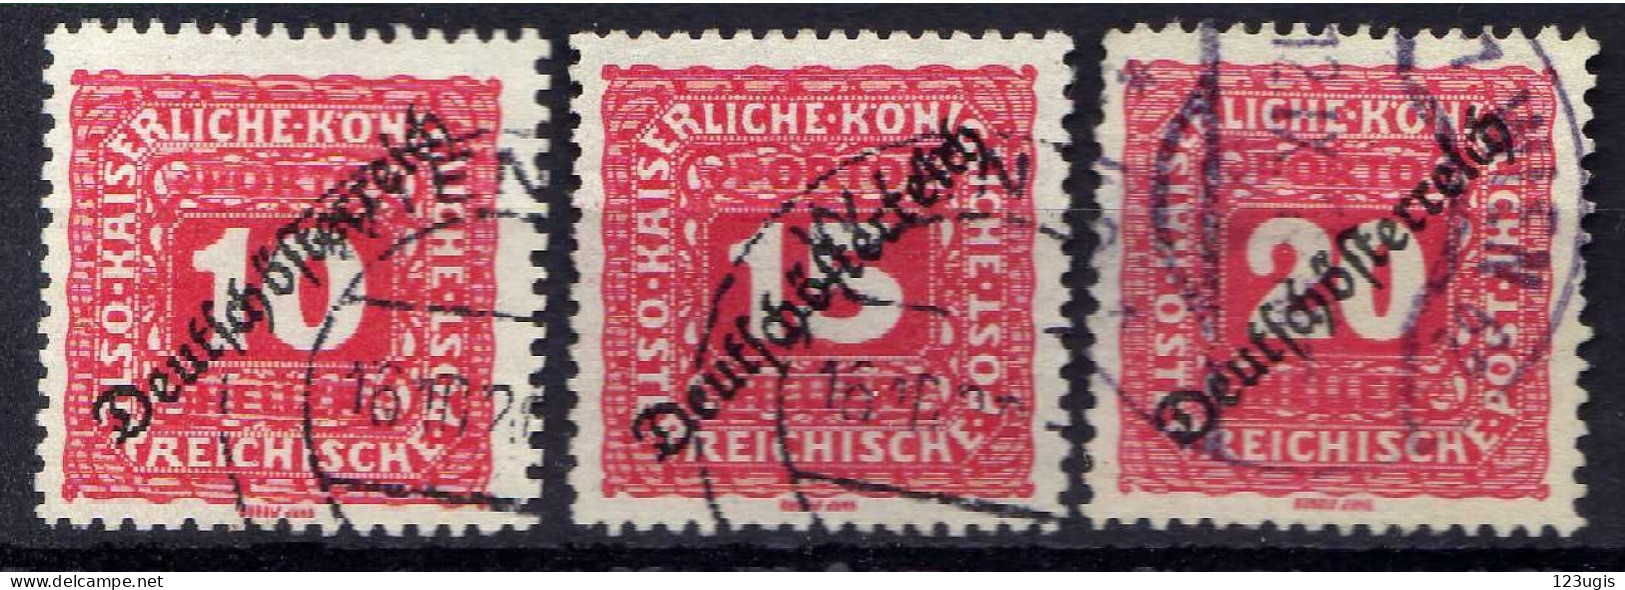 Österreich 1919 Portomarken Mi 65-67, Gestempelt [170524XIV] - Used Stamps